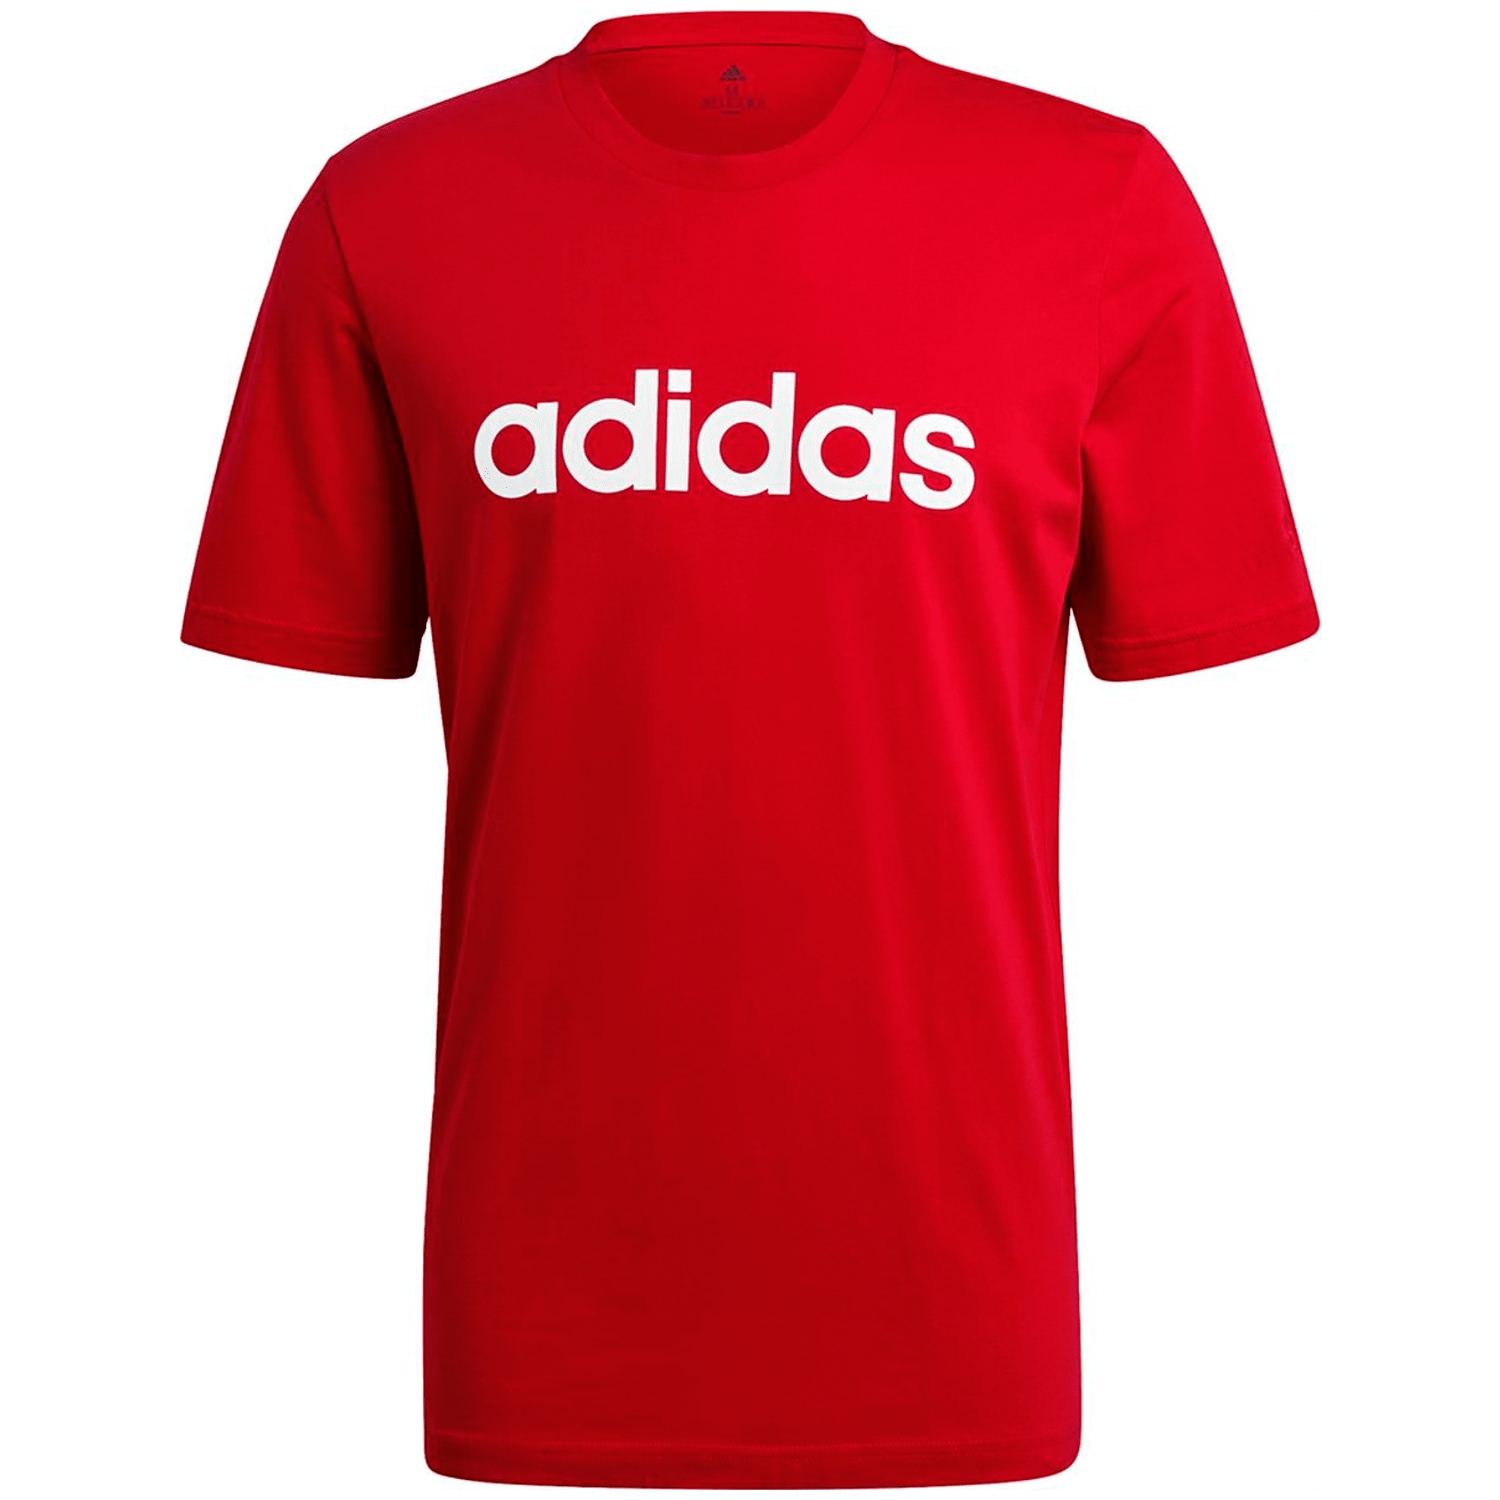 Adidas Essentials Embroidered Linear Logo T-Shirt Herren